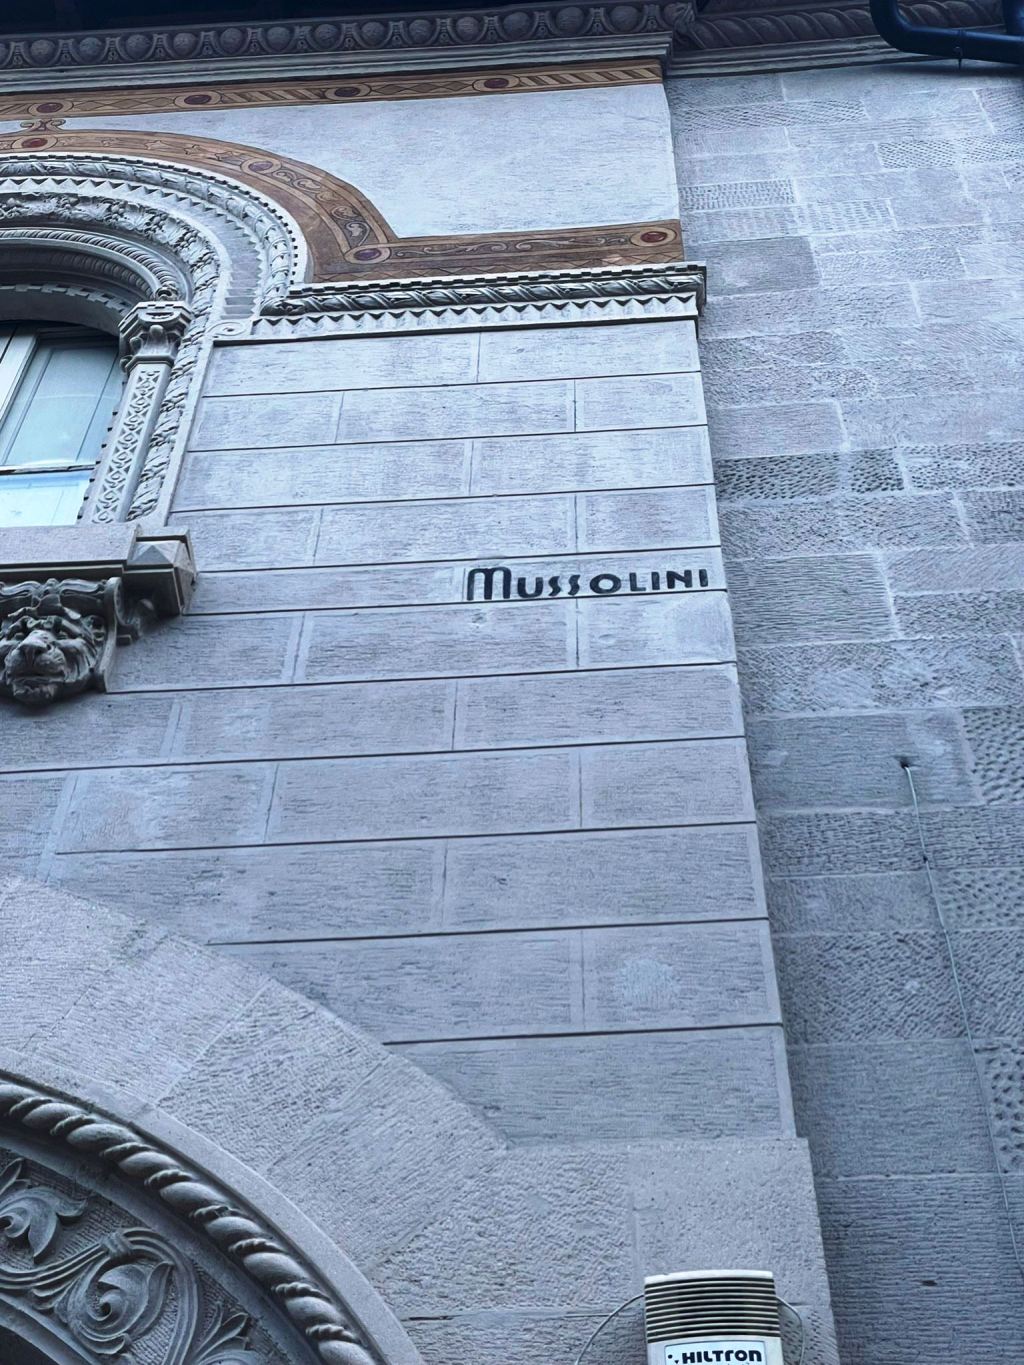 palazzo coppedè scritta Mussolini